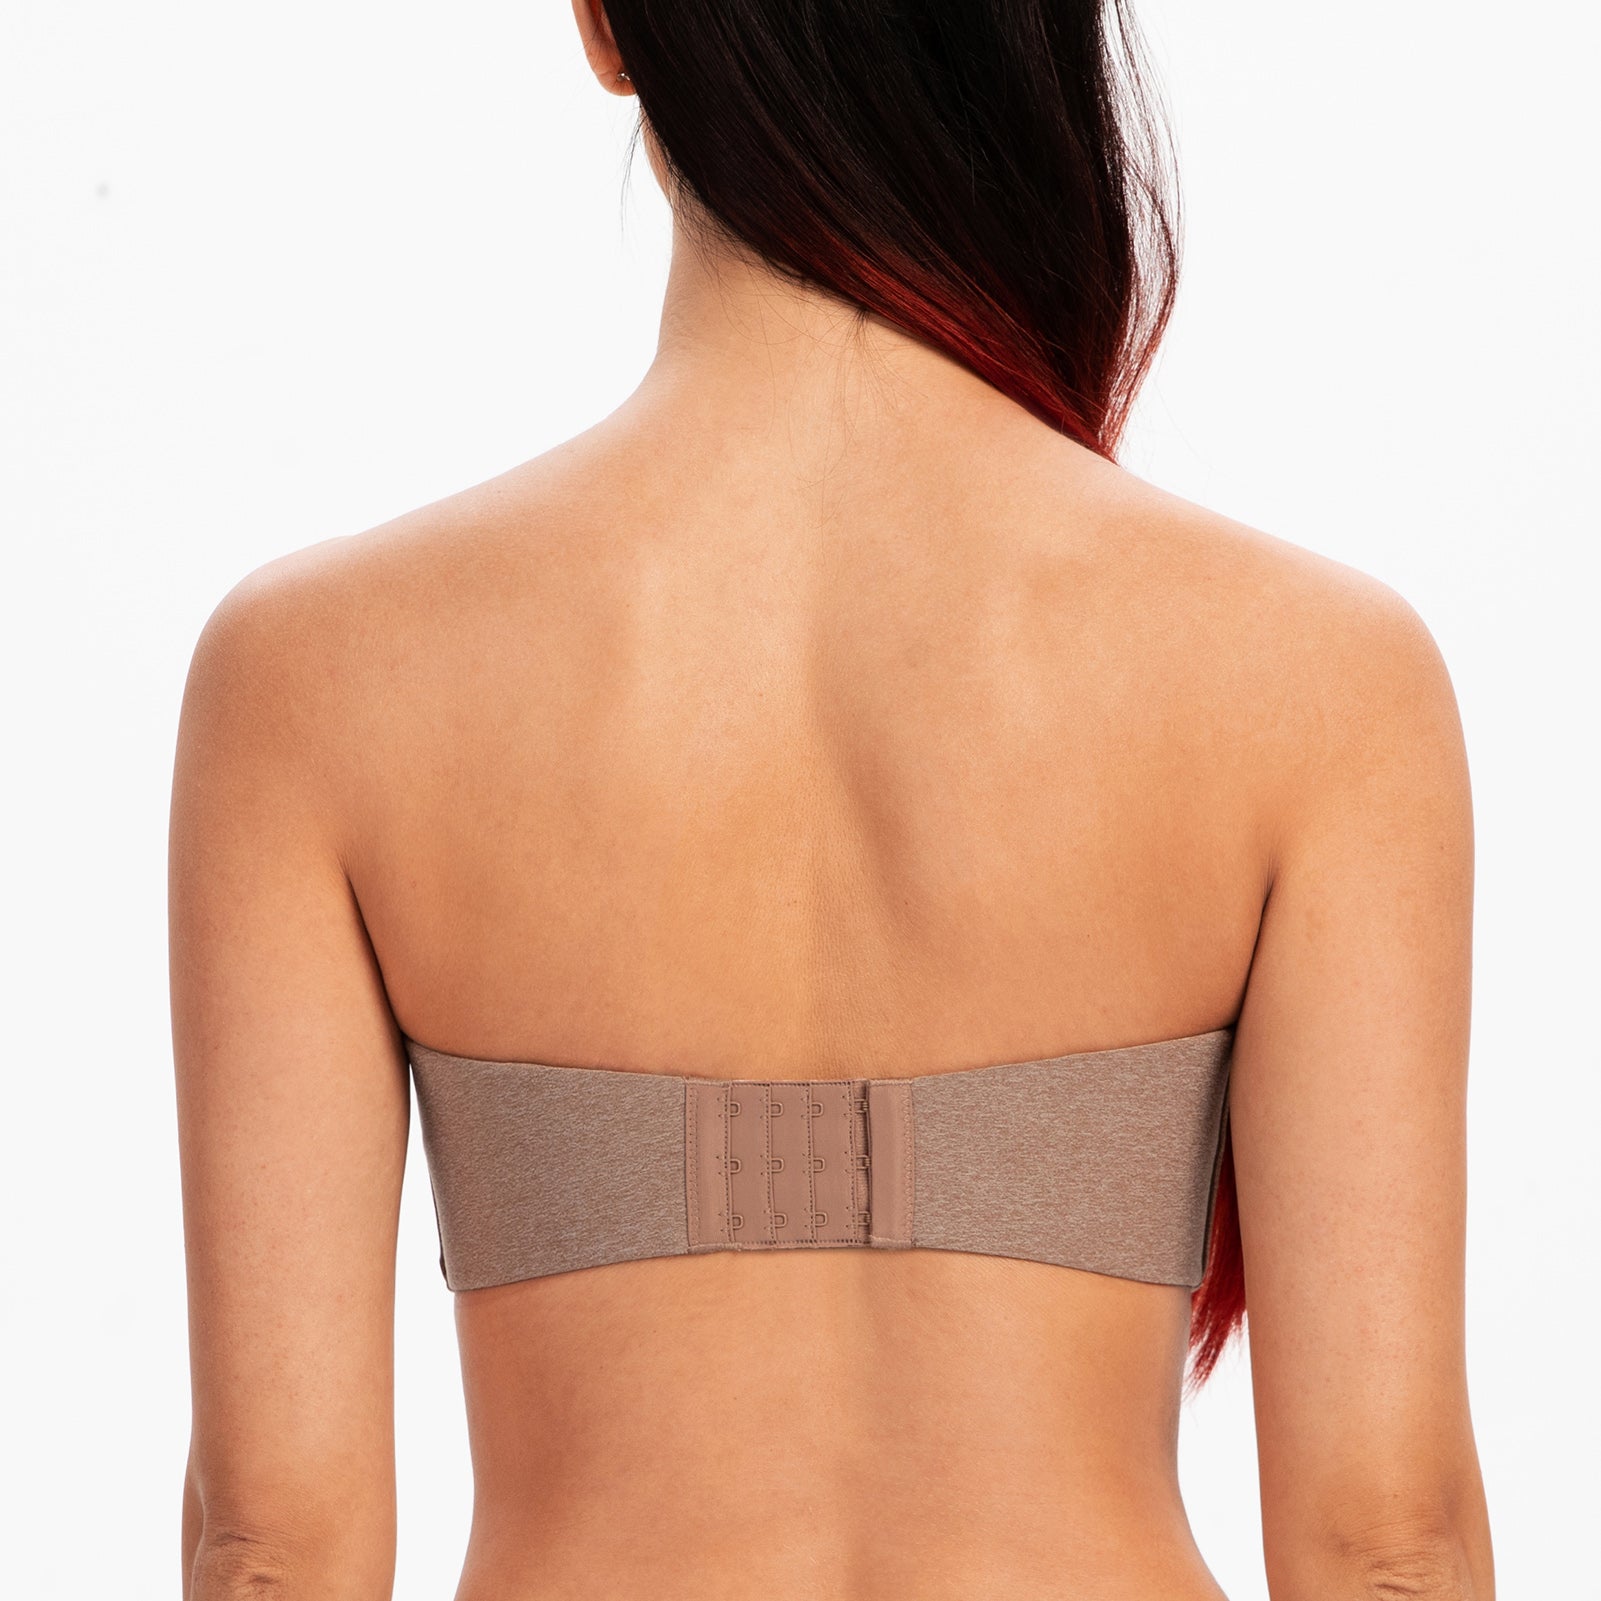 MELENECA Women's Strapless Bras for Large Bust Minimizer Unlined